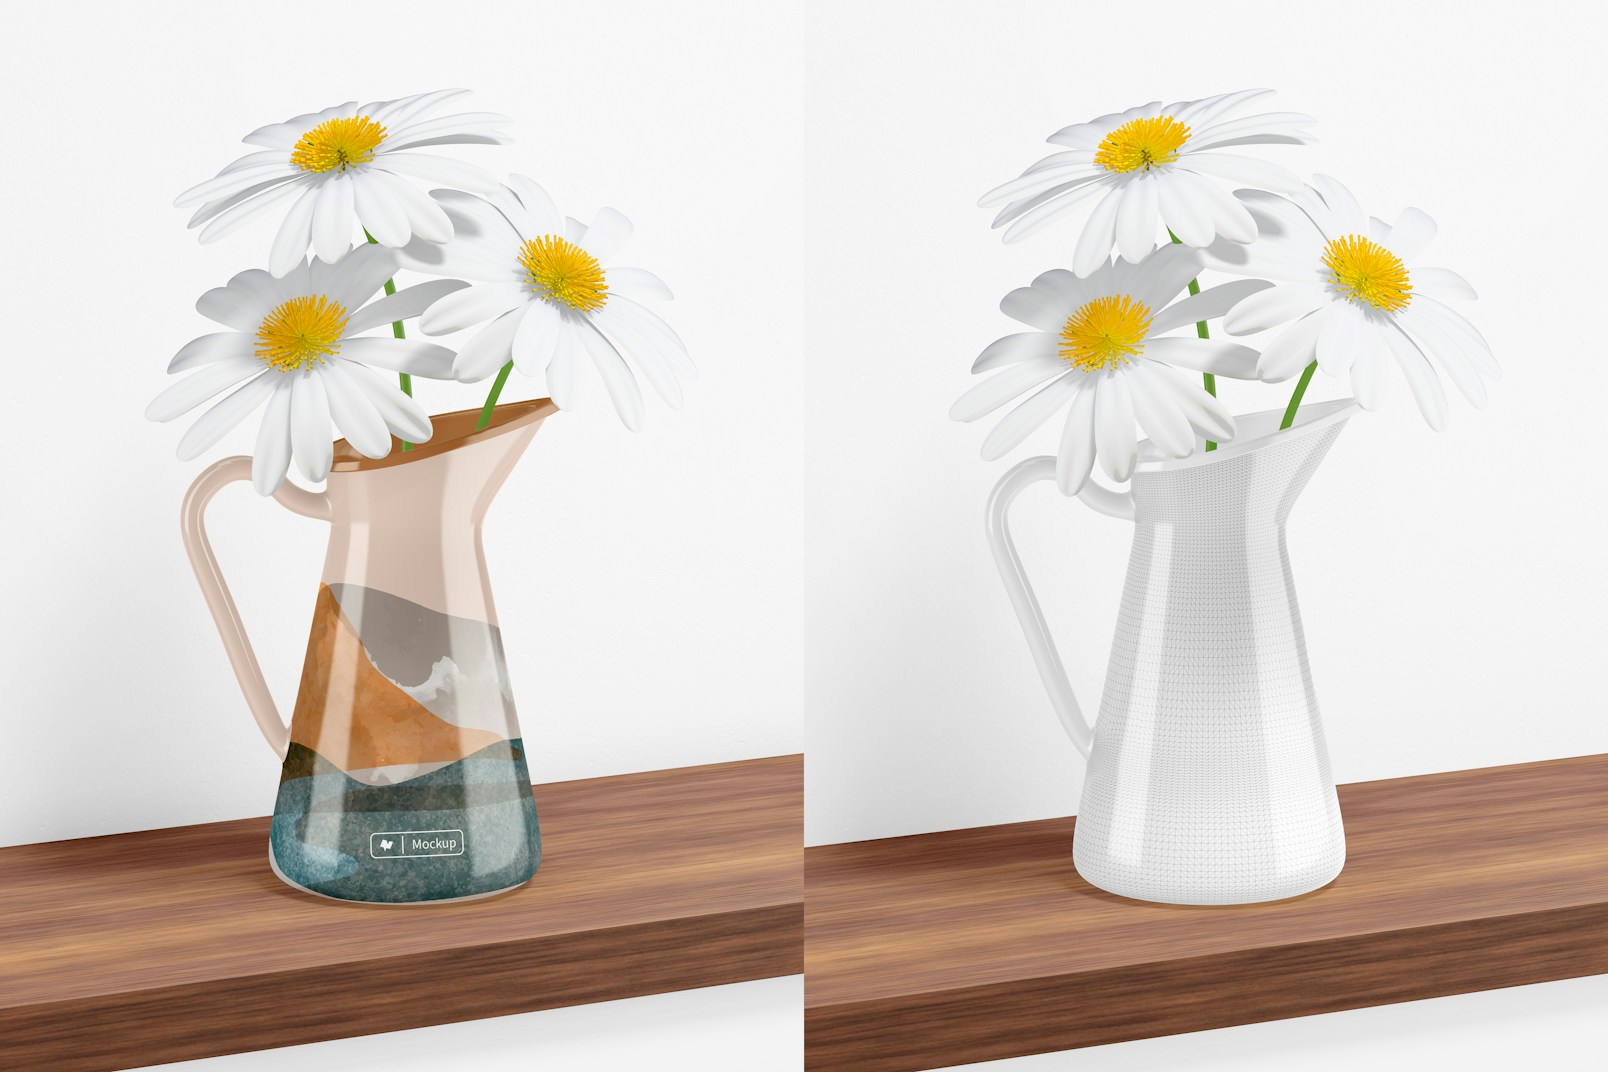 Steel Flower Vase on Table Mockup